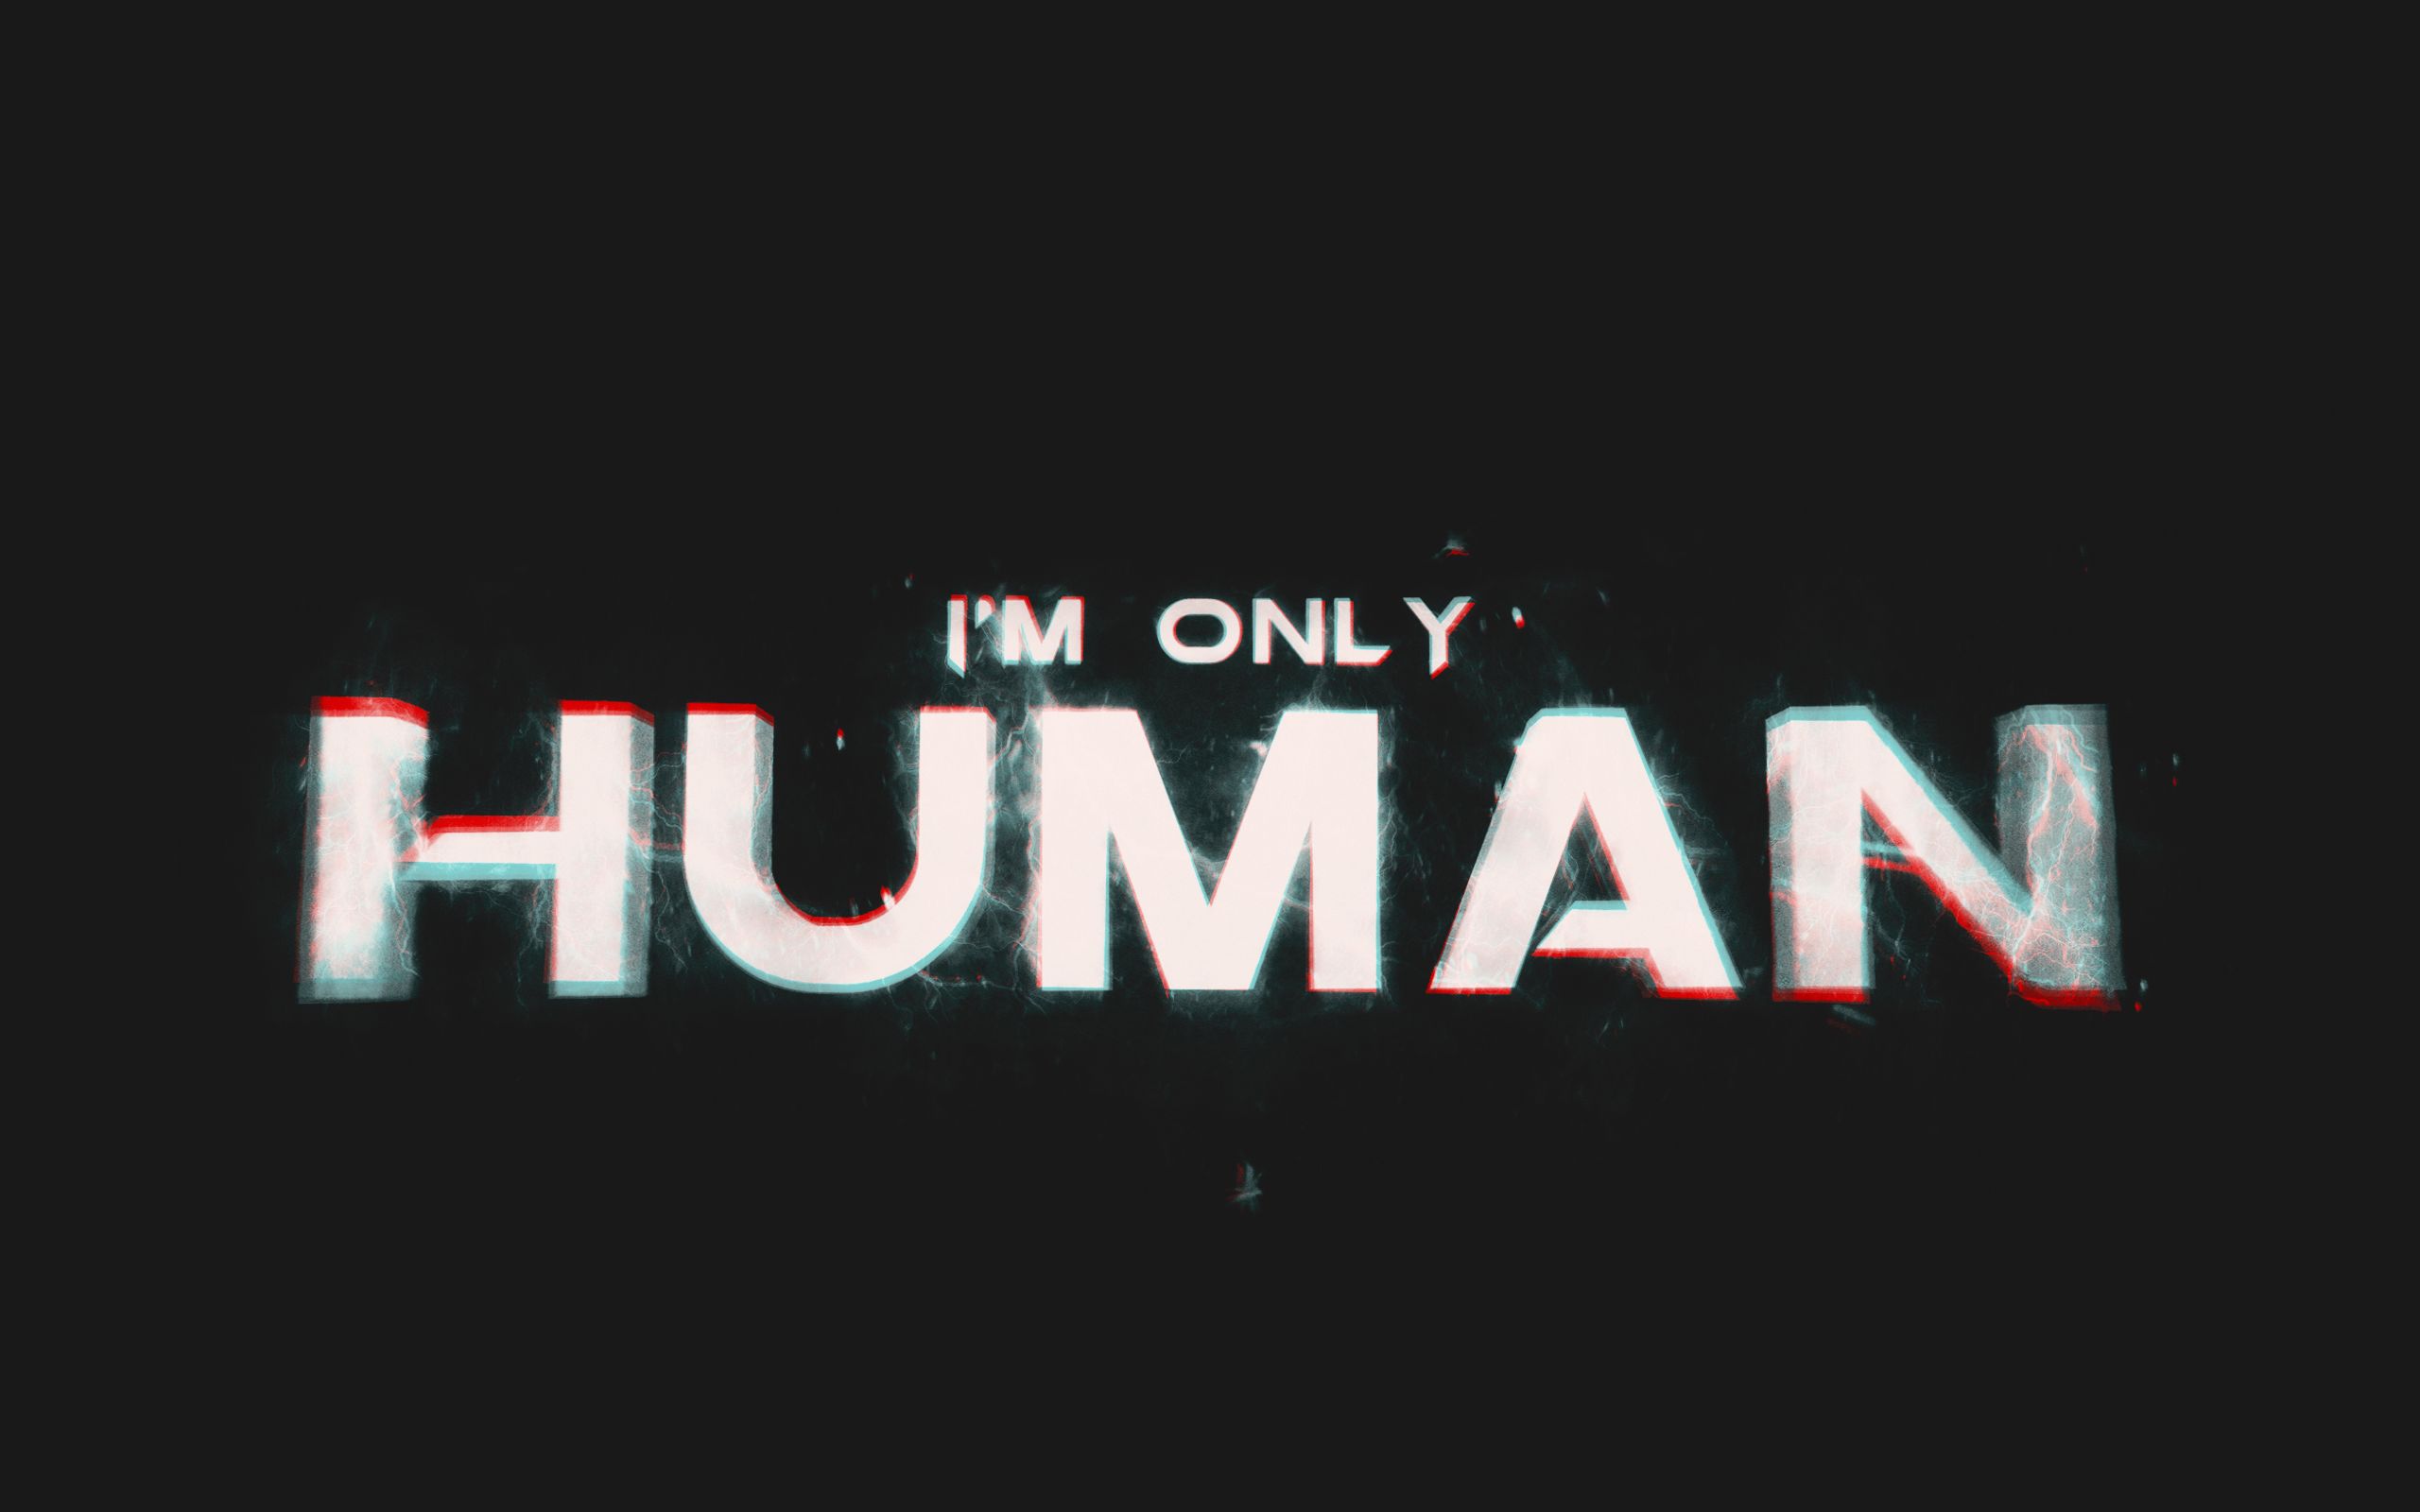 I M only Human. Only Human. Only Human Todd Burns. Im only Human after all. Only human after all